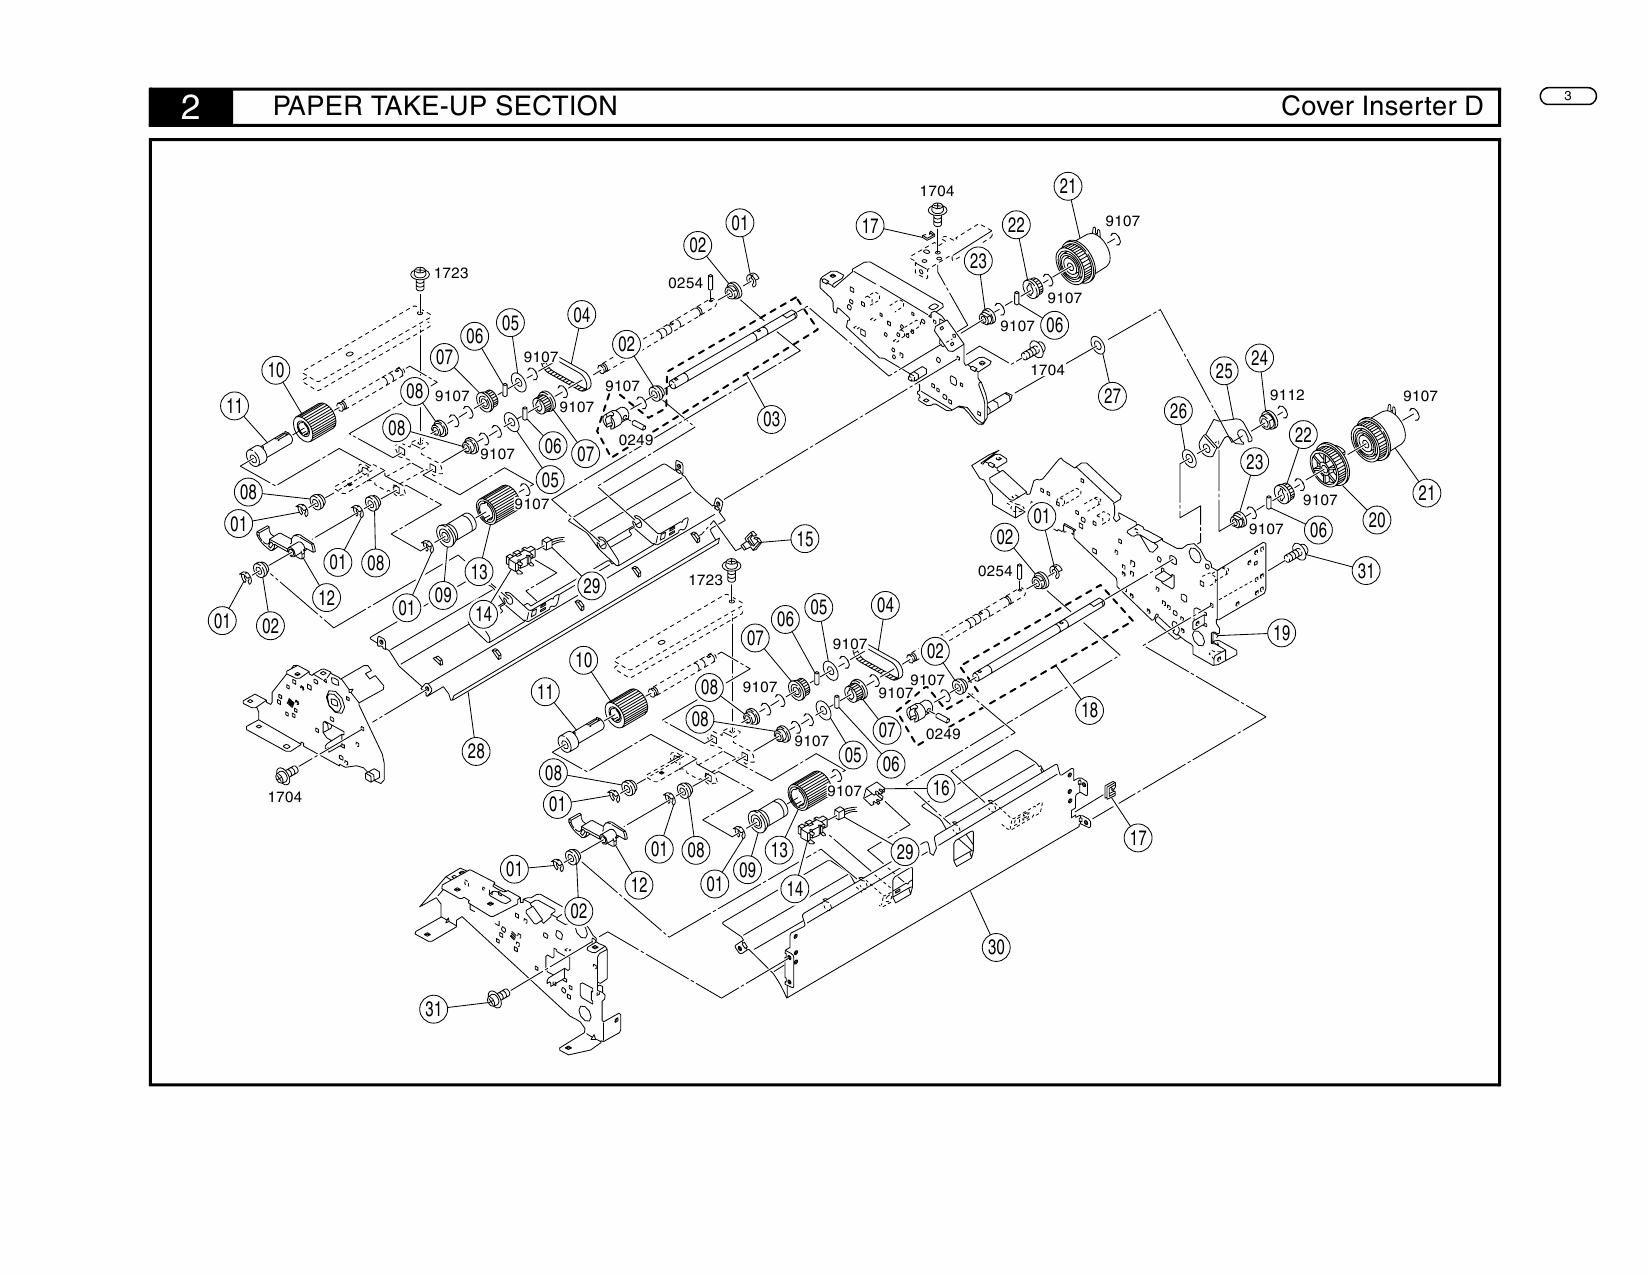 Konica-Minolta Options Cover-Inserter-D Parts Manual-3